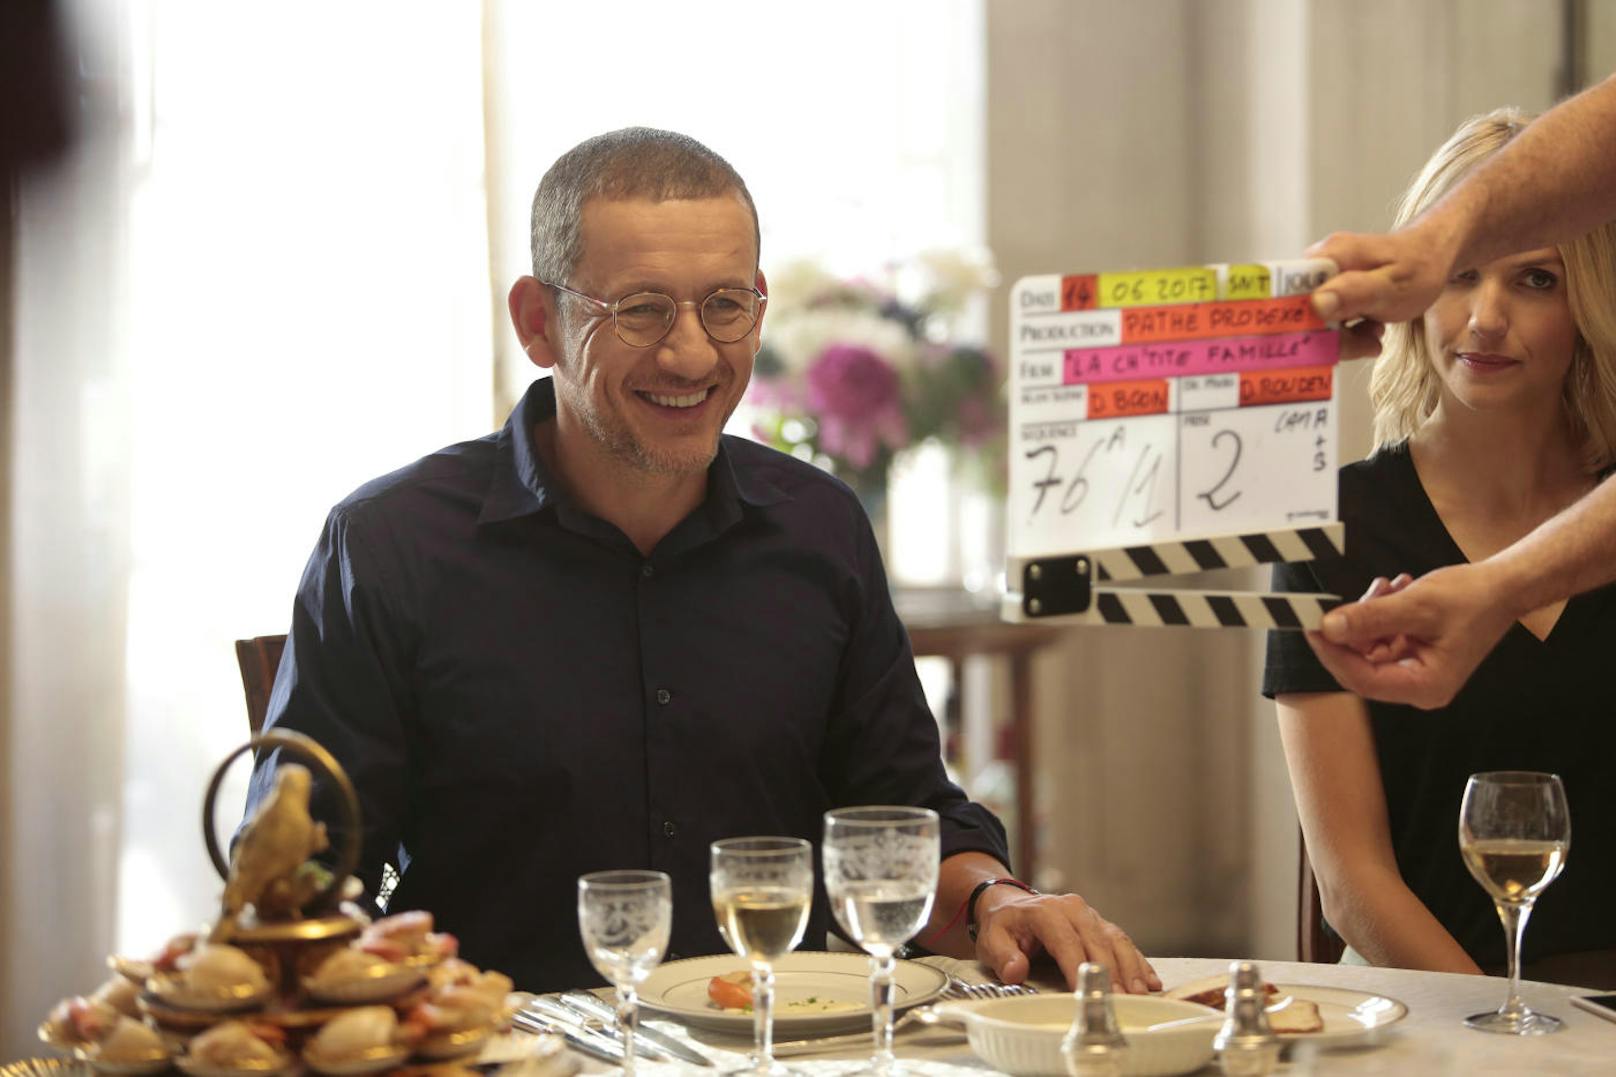 Dany Boon und Laurence Arné am Set von "Die Sch'tis in Paris - Eine Familie auf Abwegen".